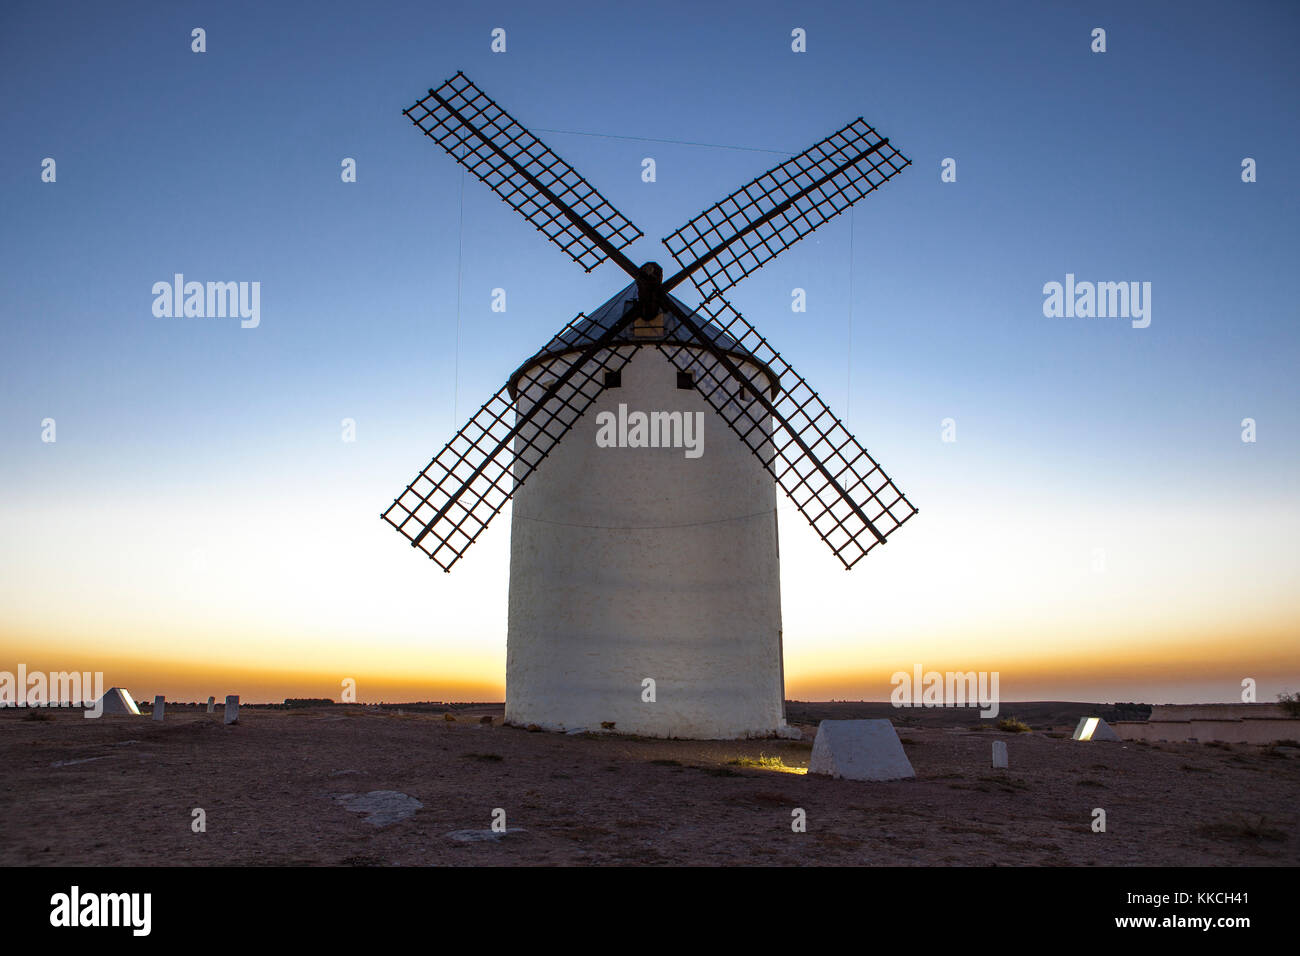 Beleuchtete traditionelle Windmühle in Rising, Campo de Criptana, Spanien Stockfoto